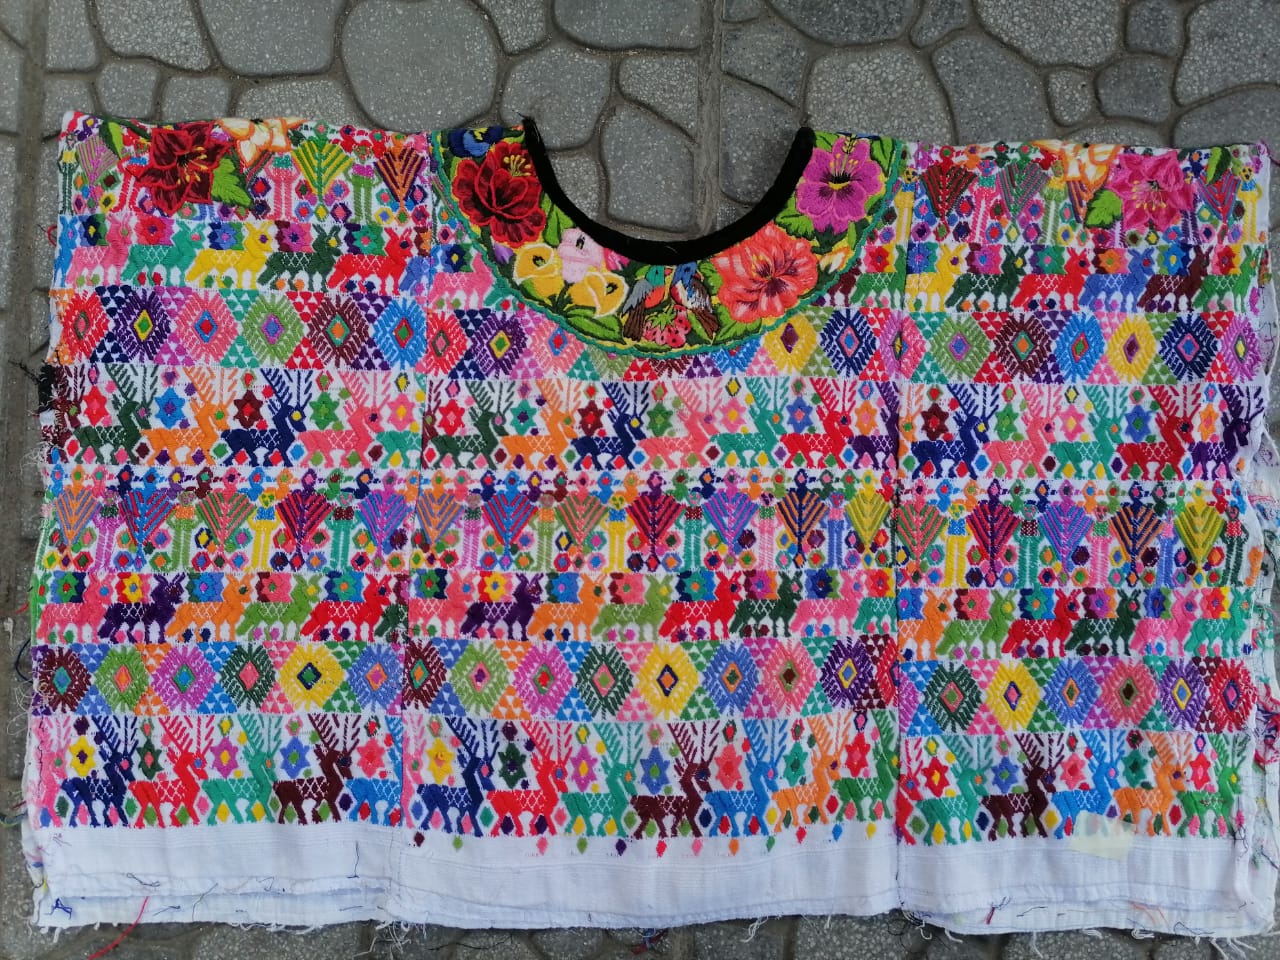 Guatemalan Huipil Pillow - Colourful Coban II